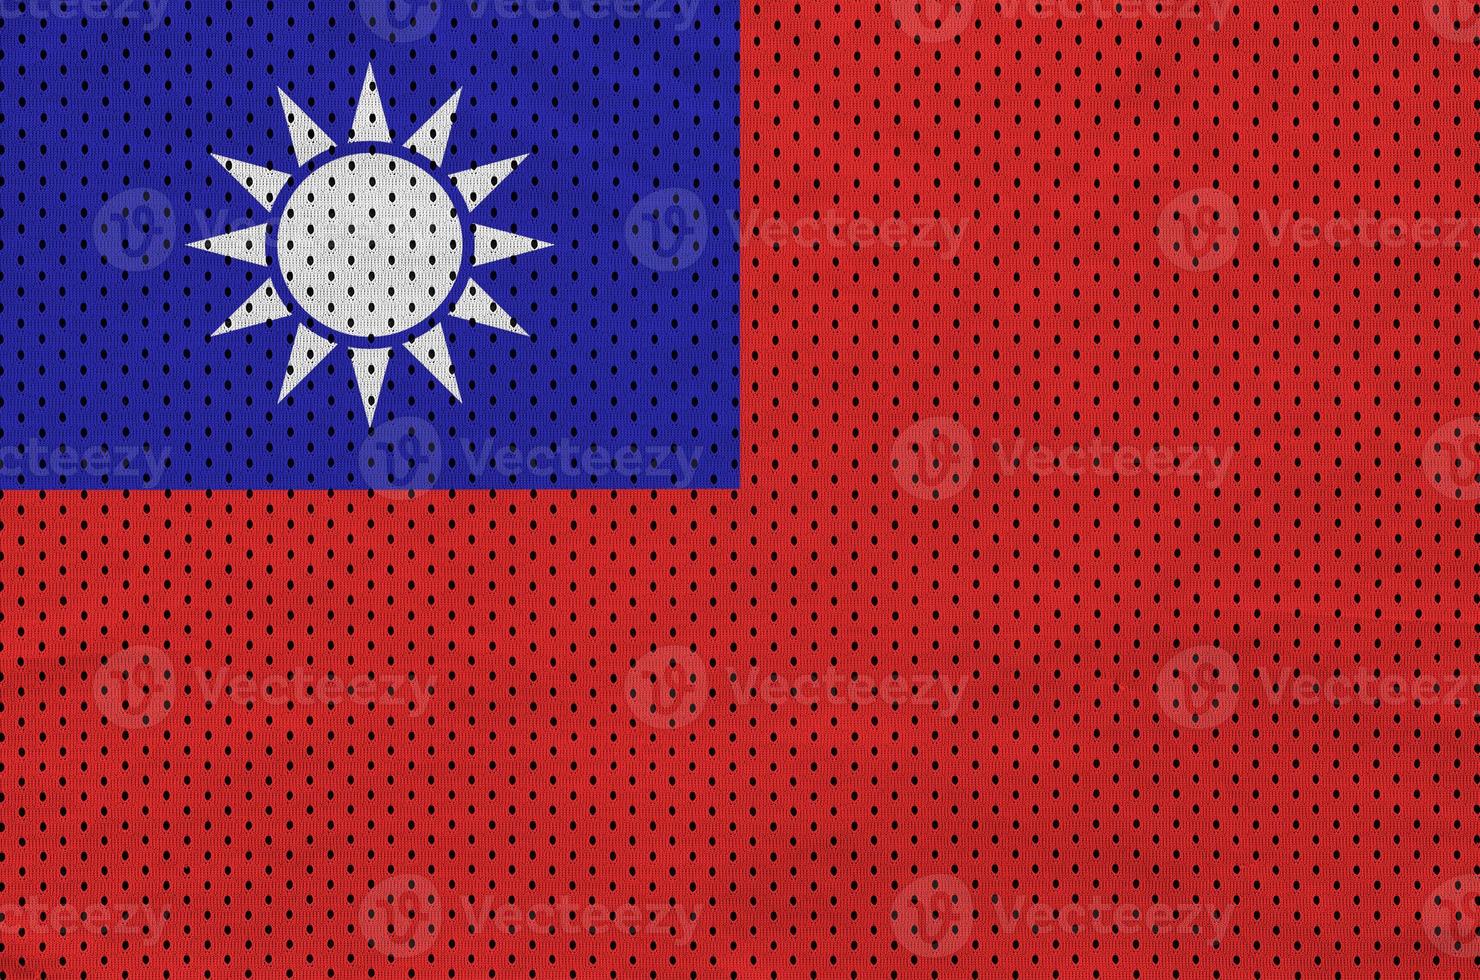 bandeira de taiwan impressa em um tecido de malha esportiva de nylon de poliéster foto